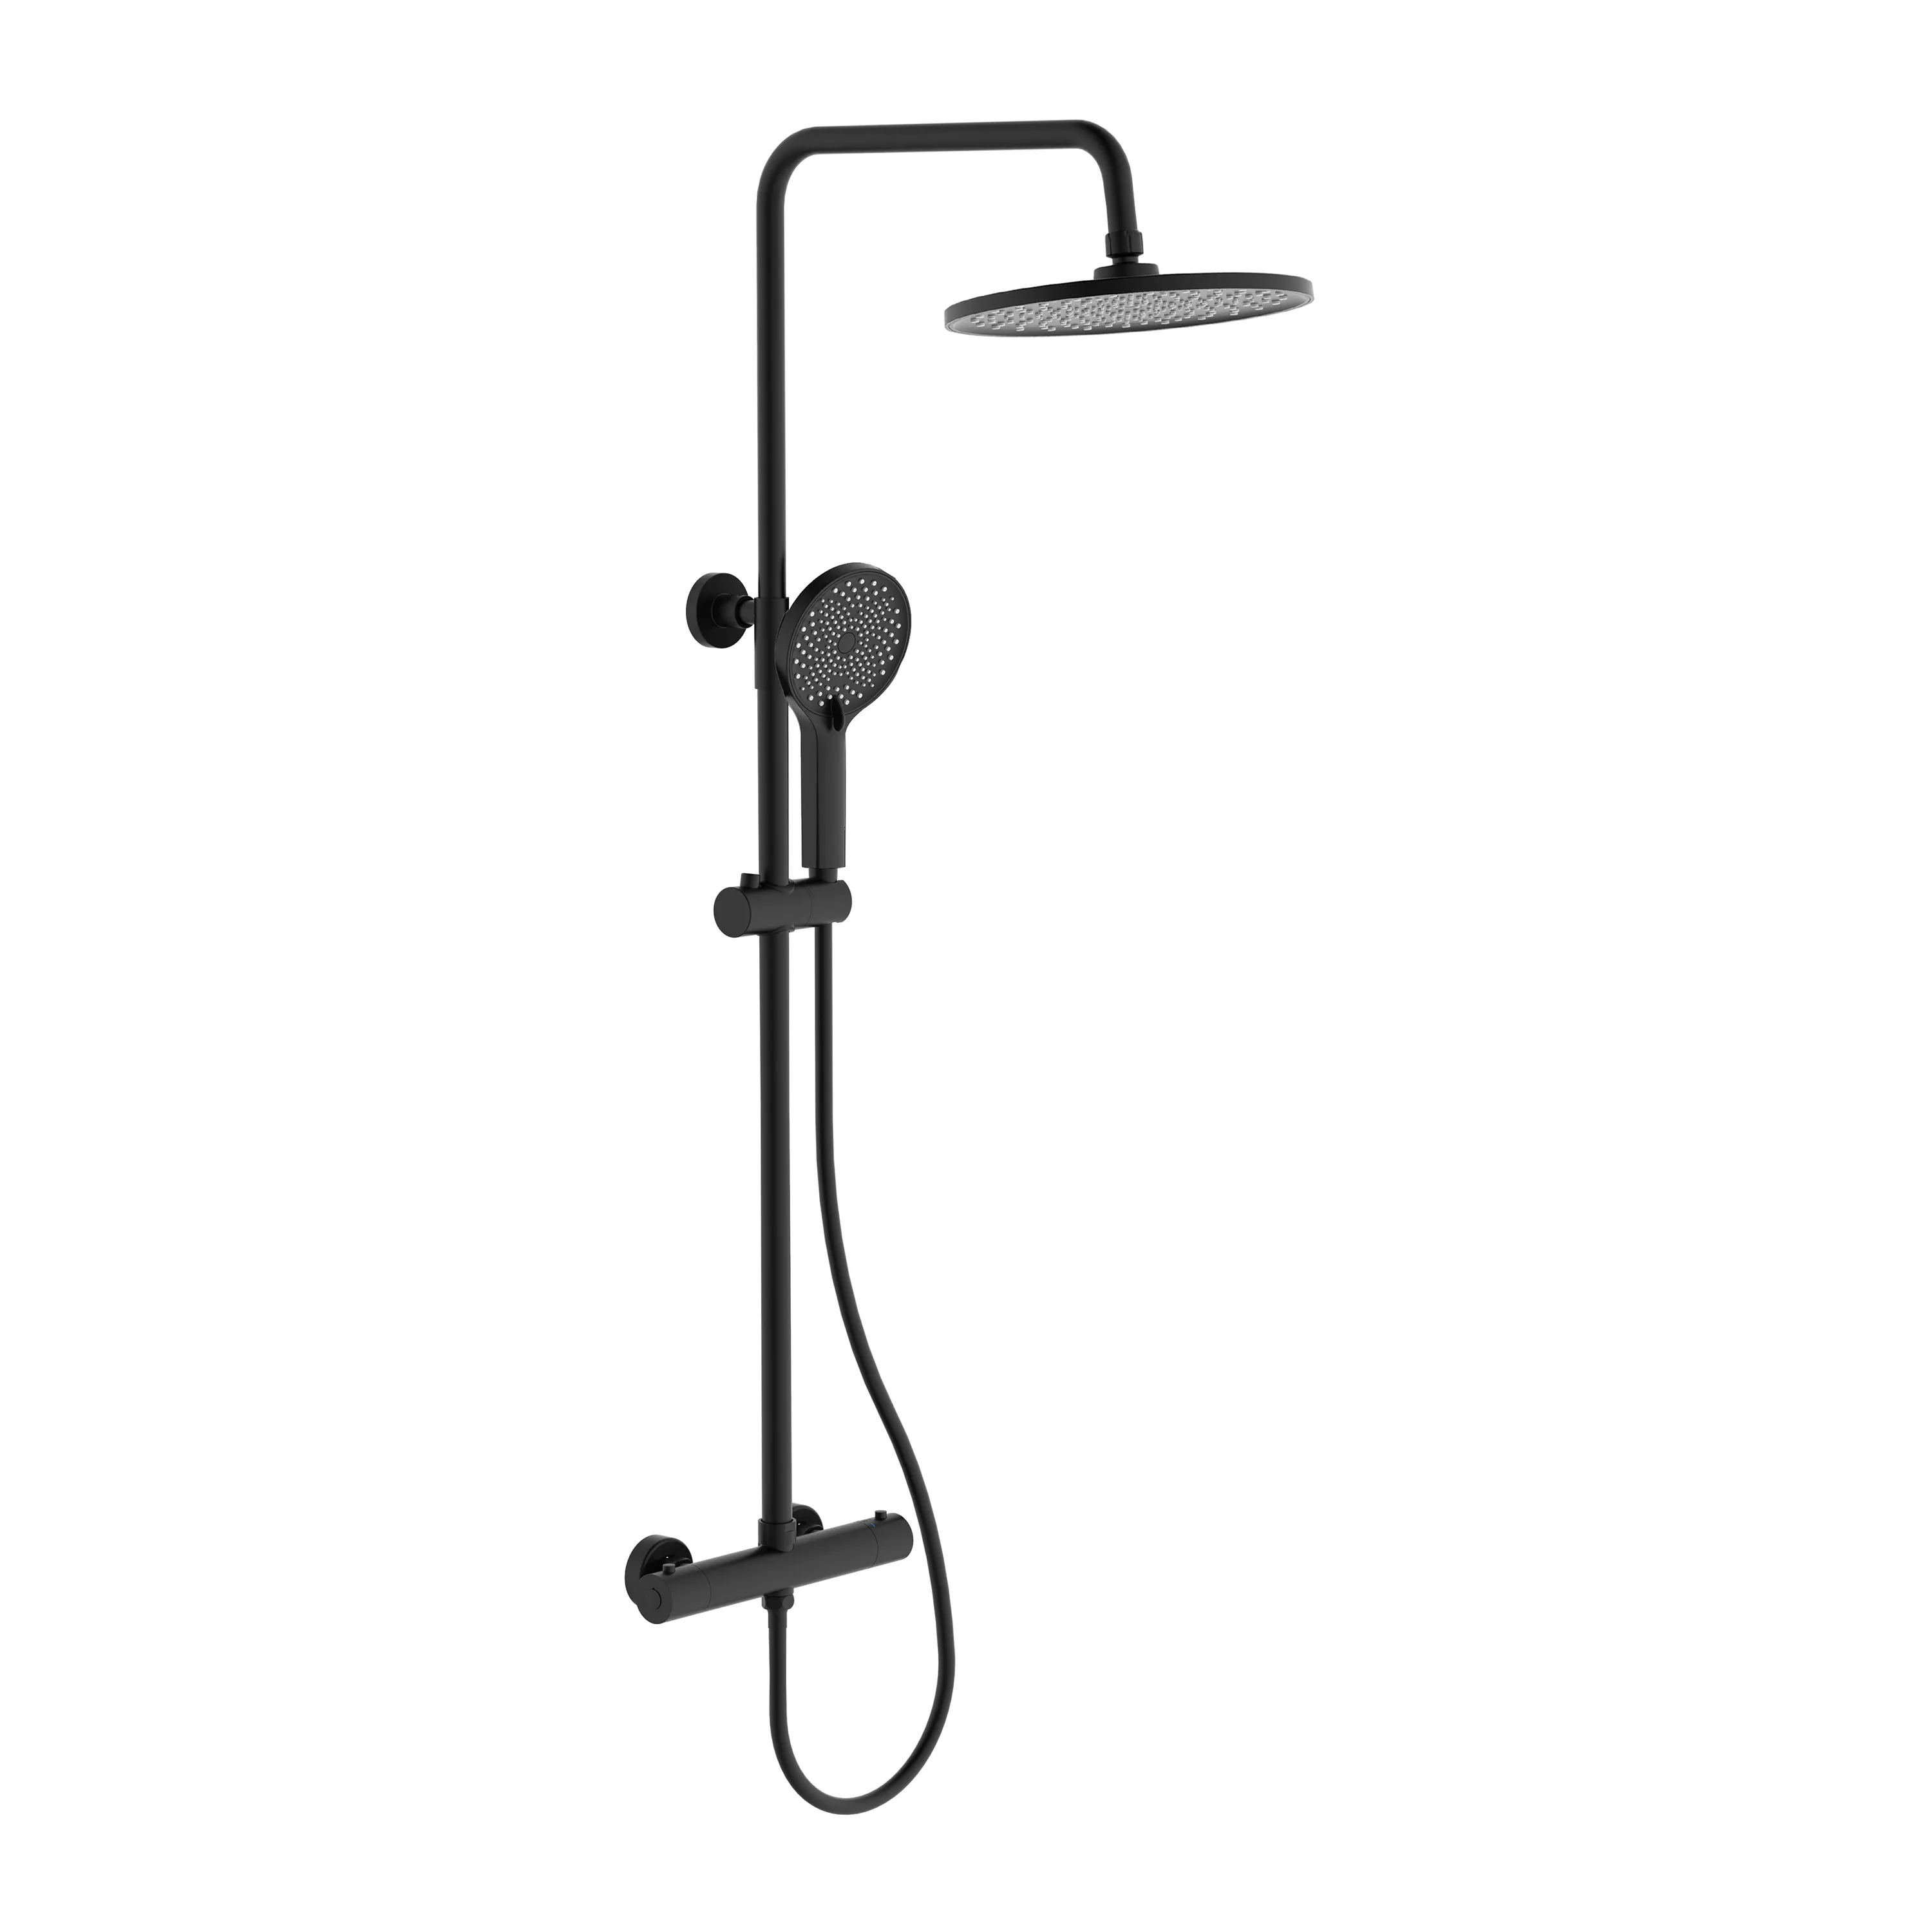 Grifo de ducha de latón con lluvia para baño, juego de ducha termostática con 2 funciones, color negro mate, gran oferta